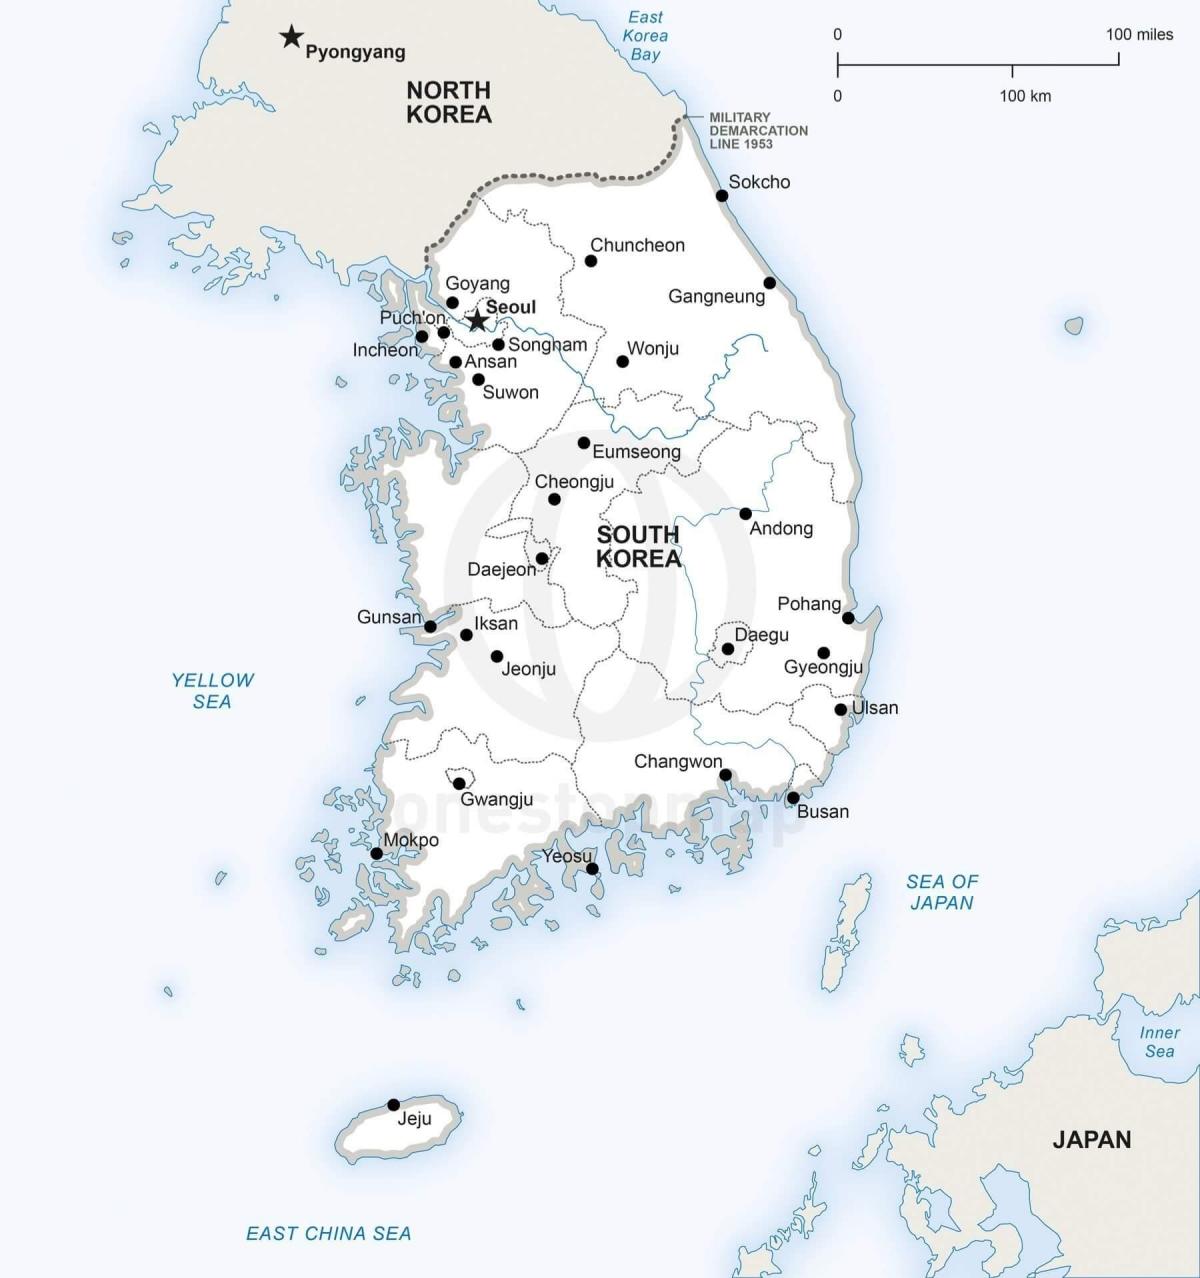 Mapa da Coreia do Sul (ROK) com as principais cidades